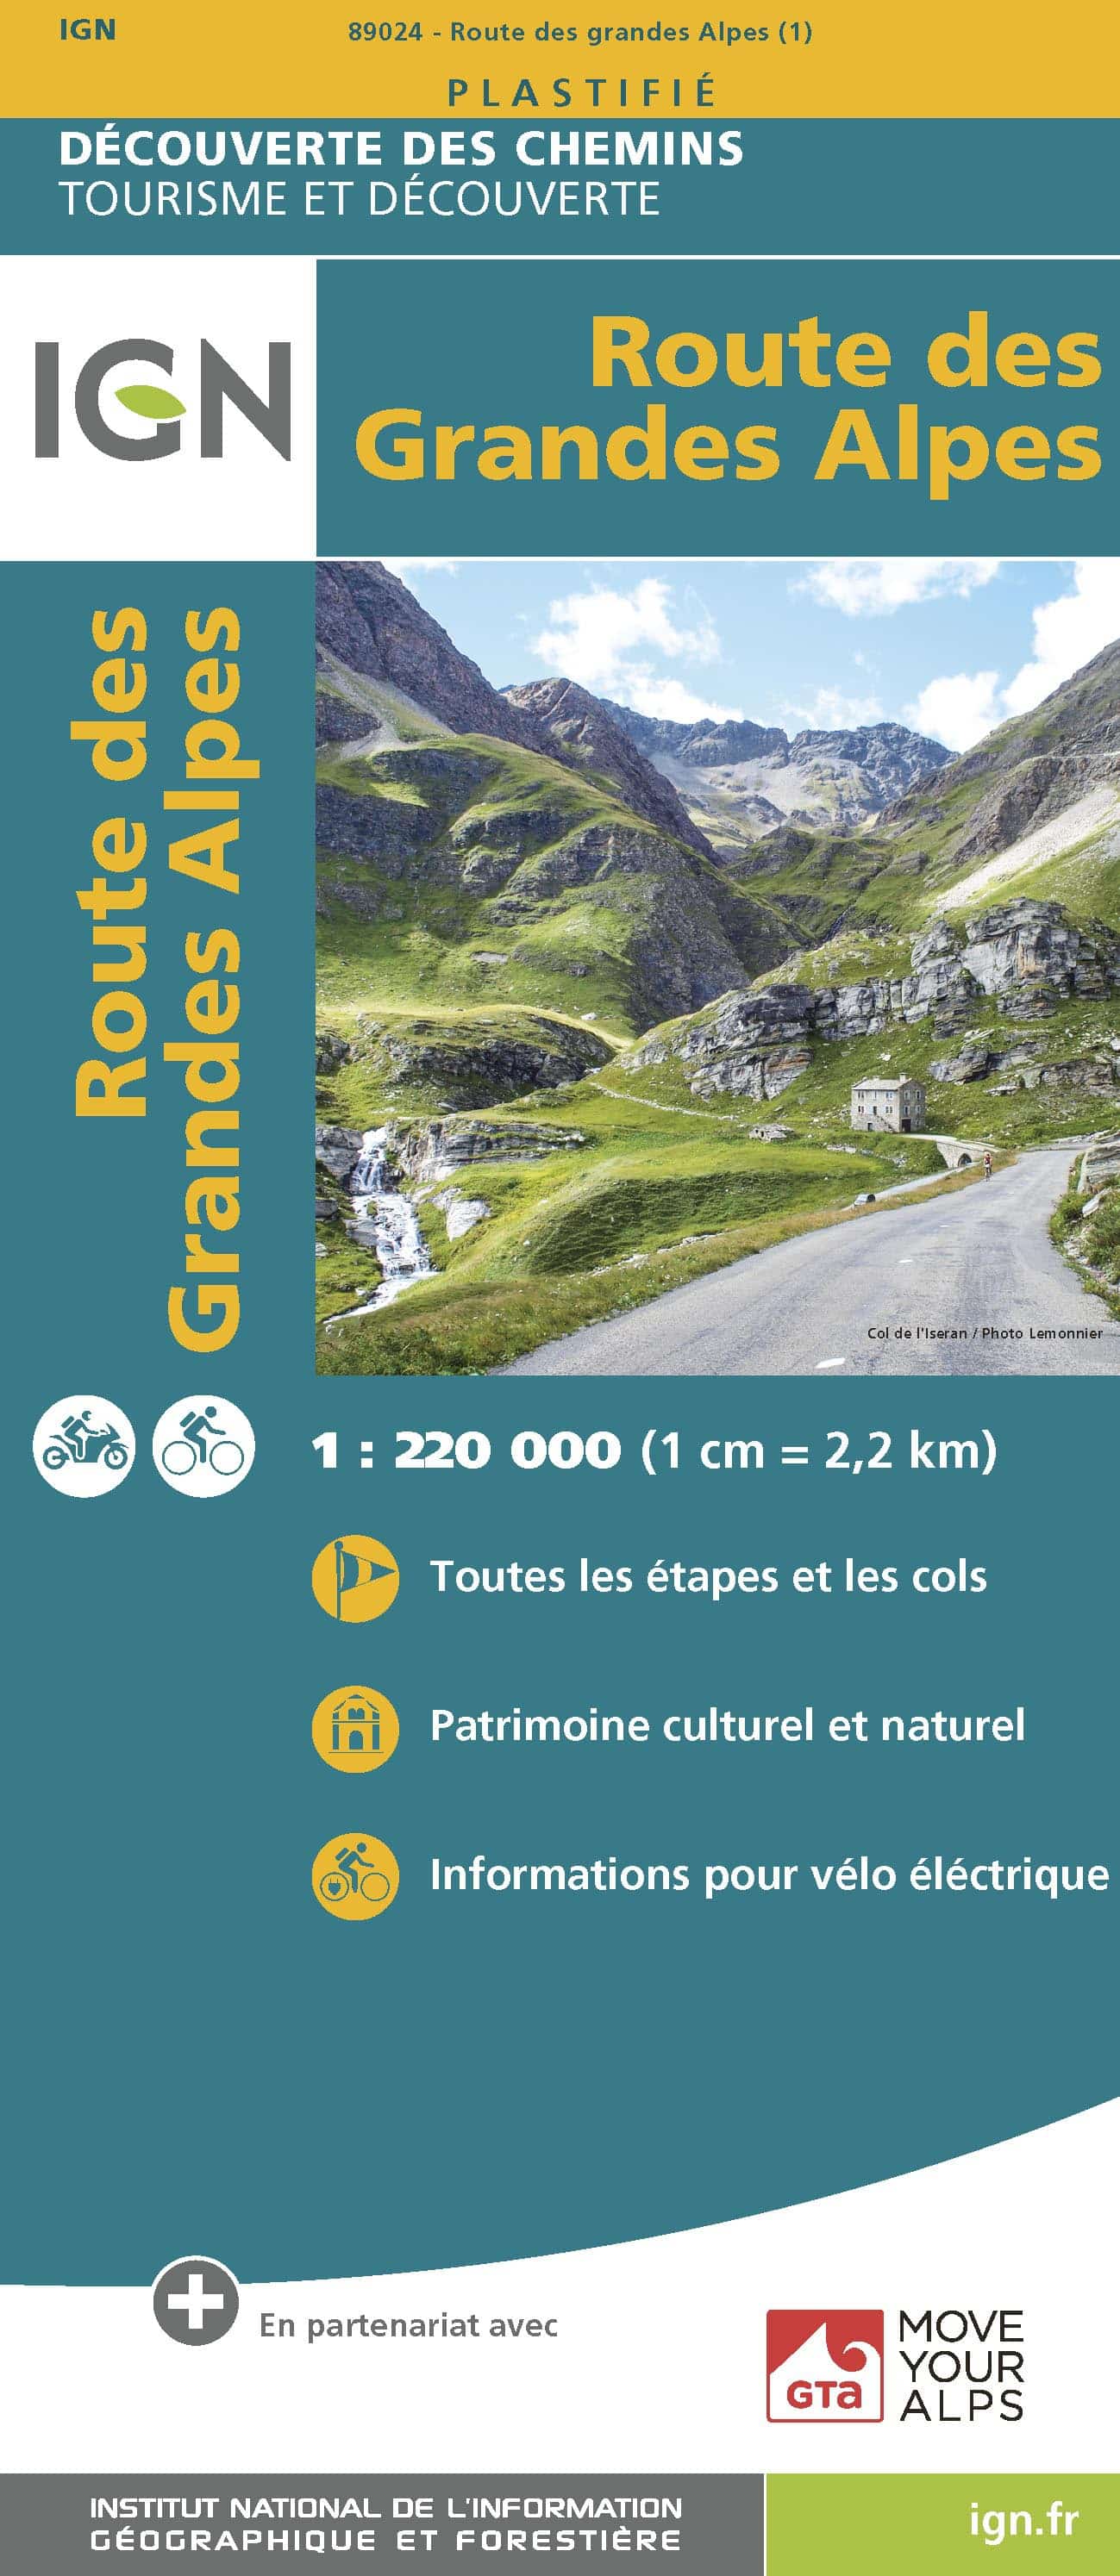 Map parcours randonnée Grandes Alpes